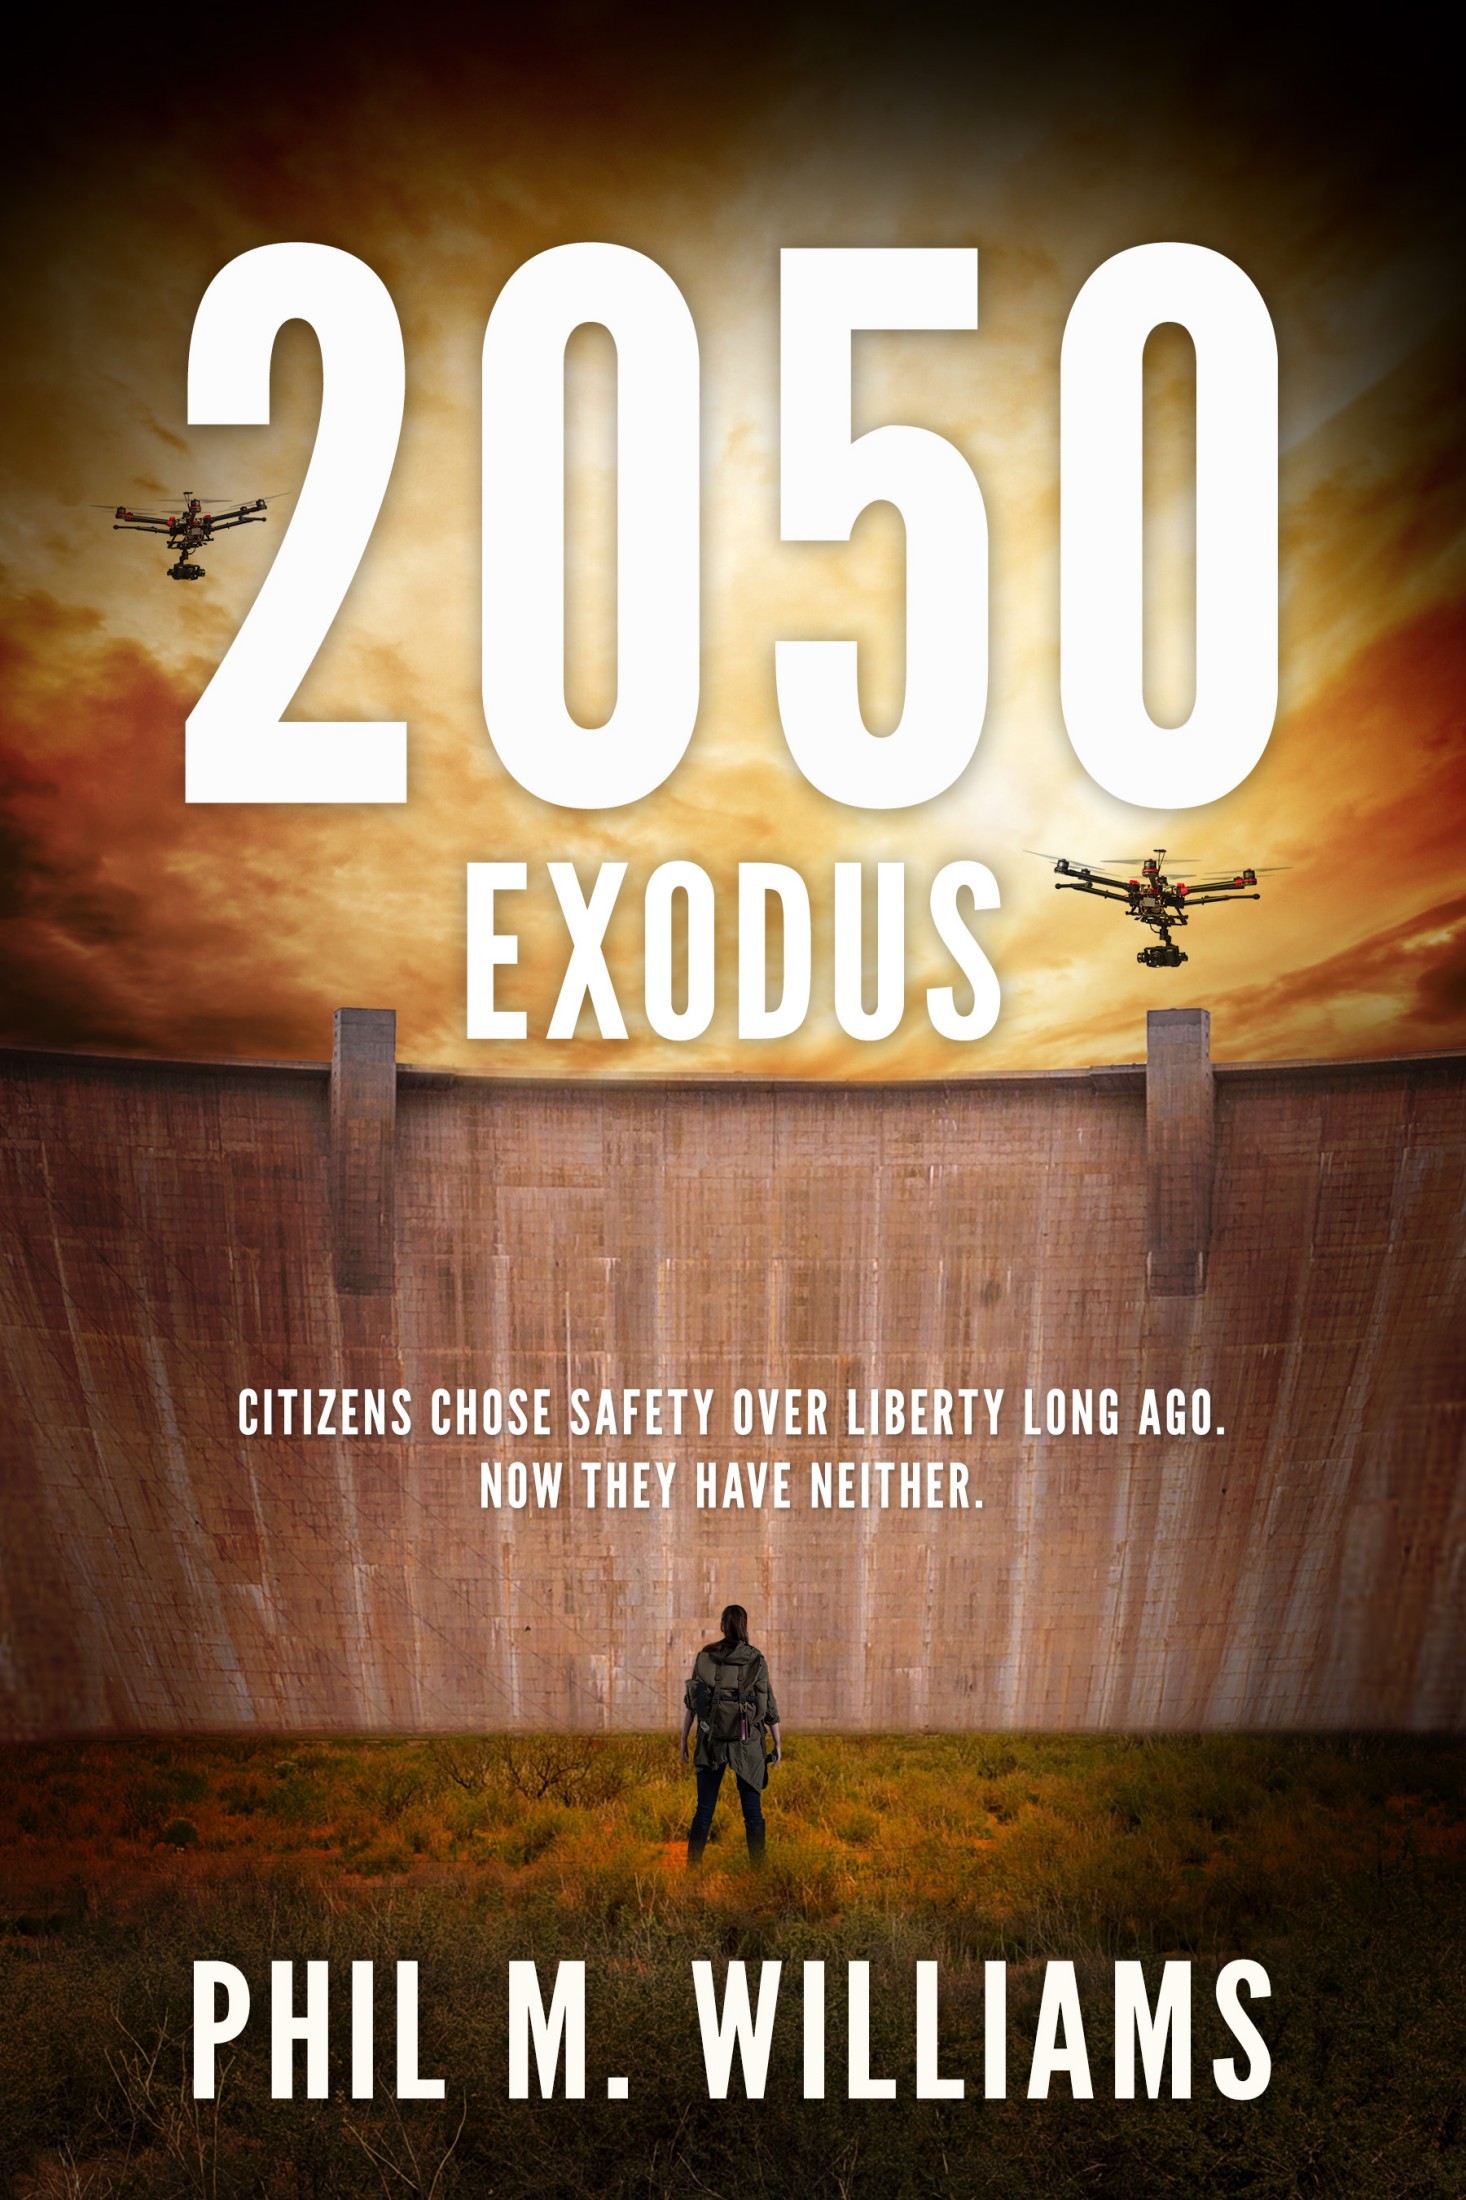 2050: Exodus